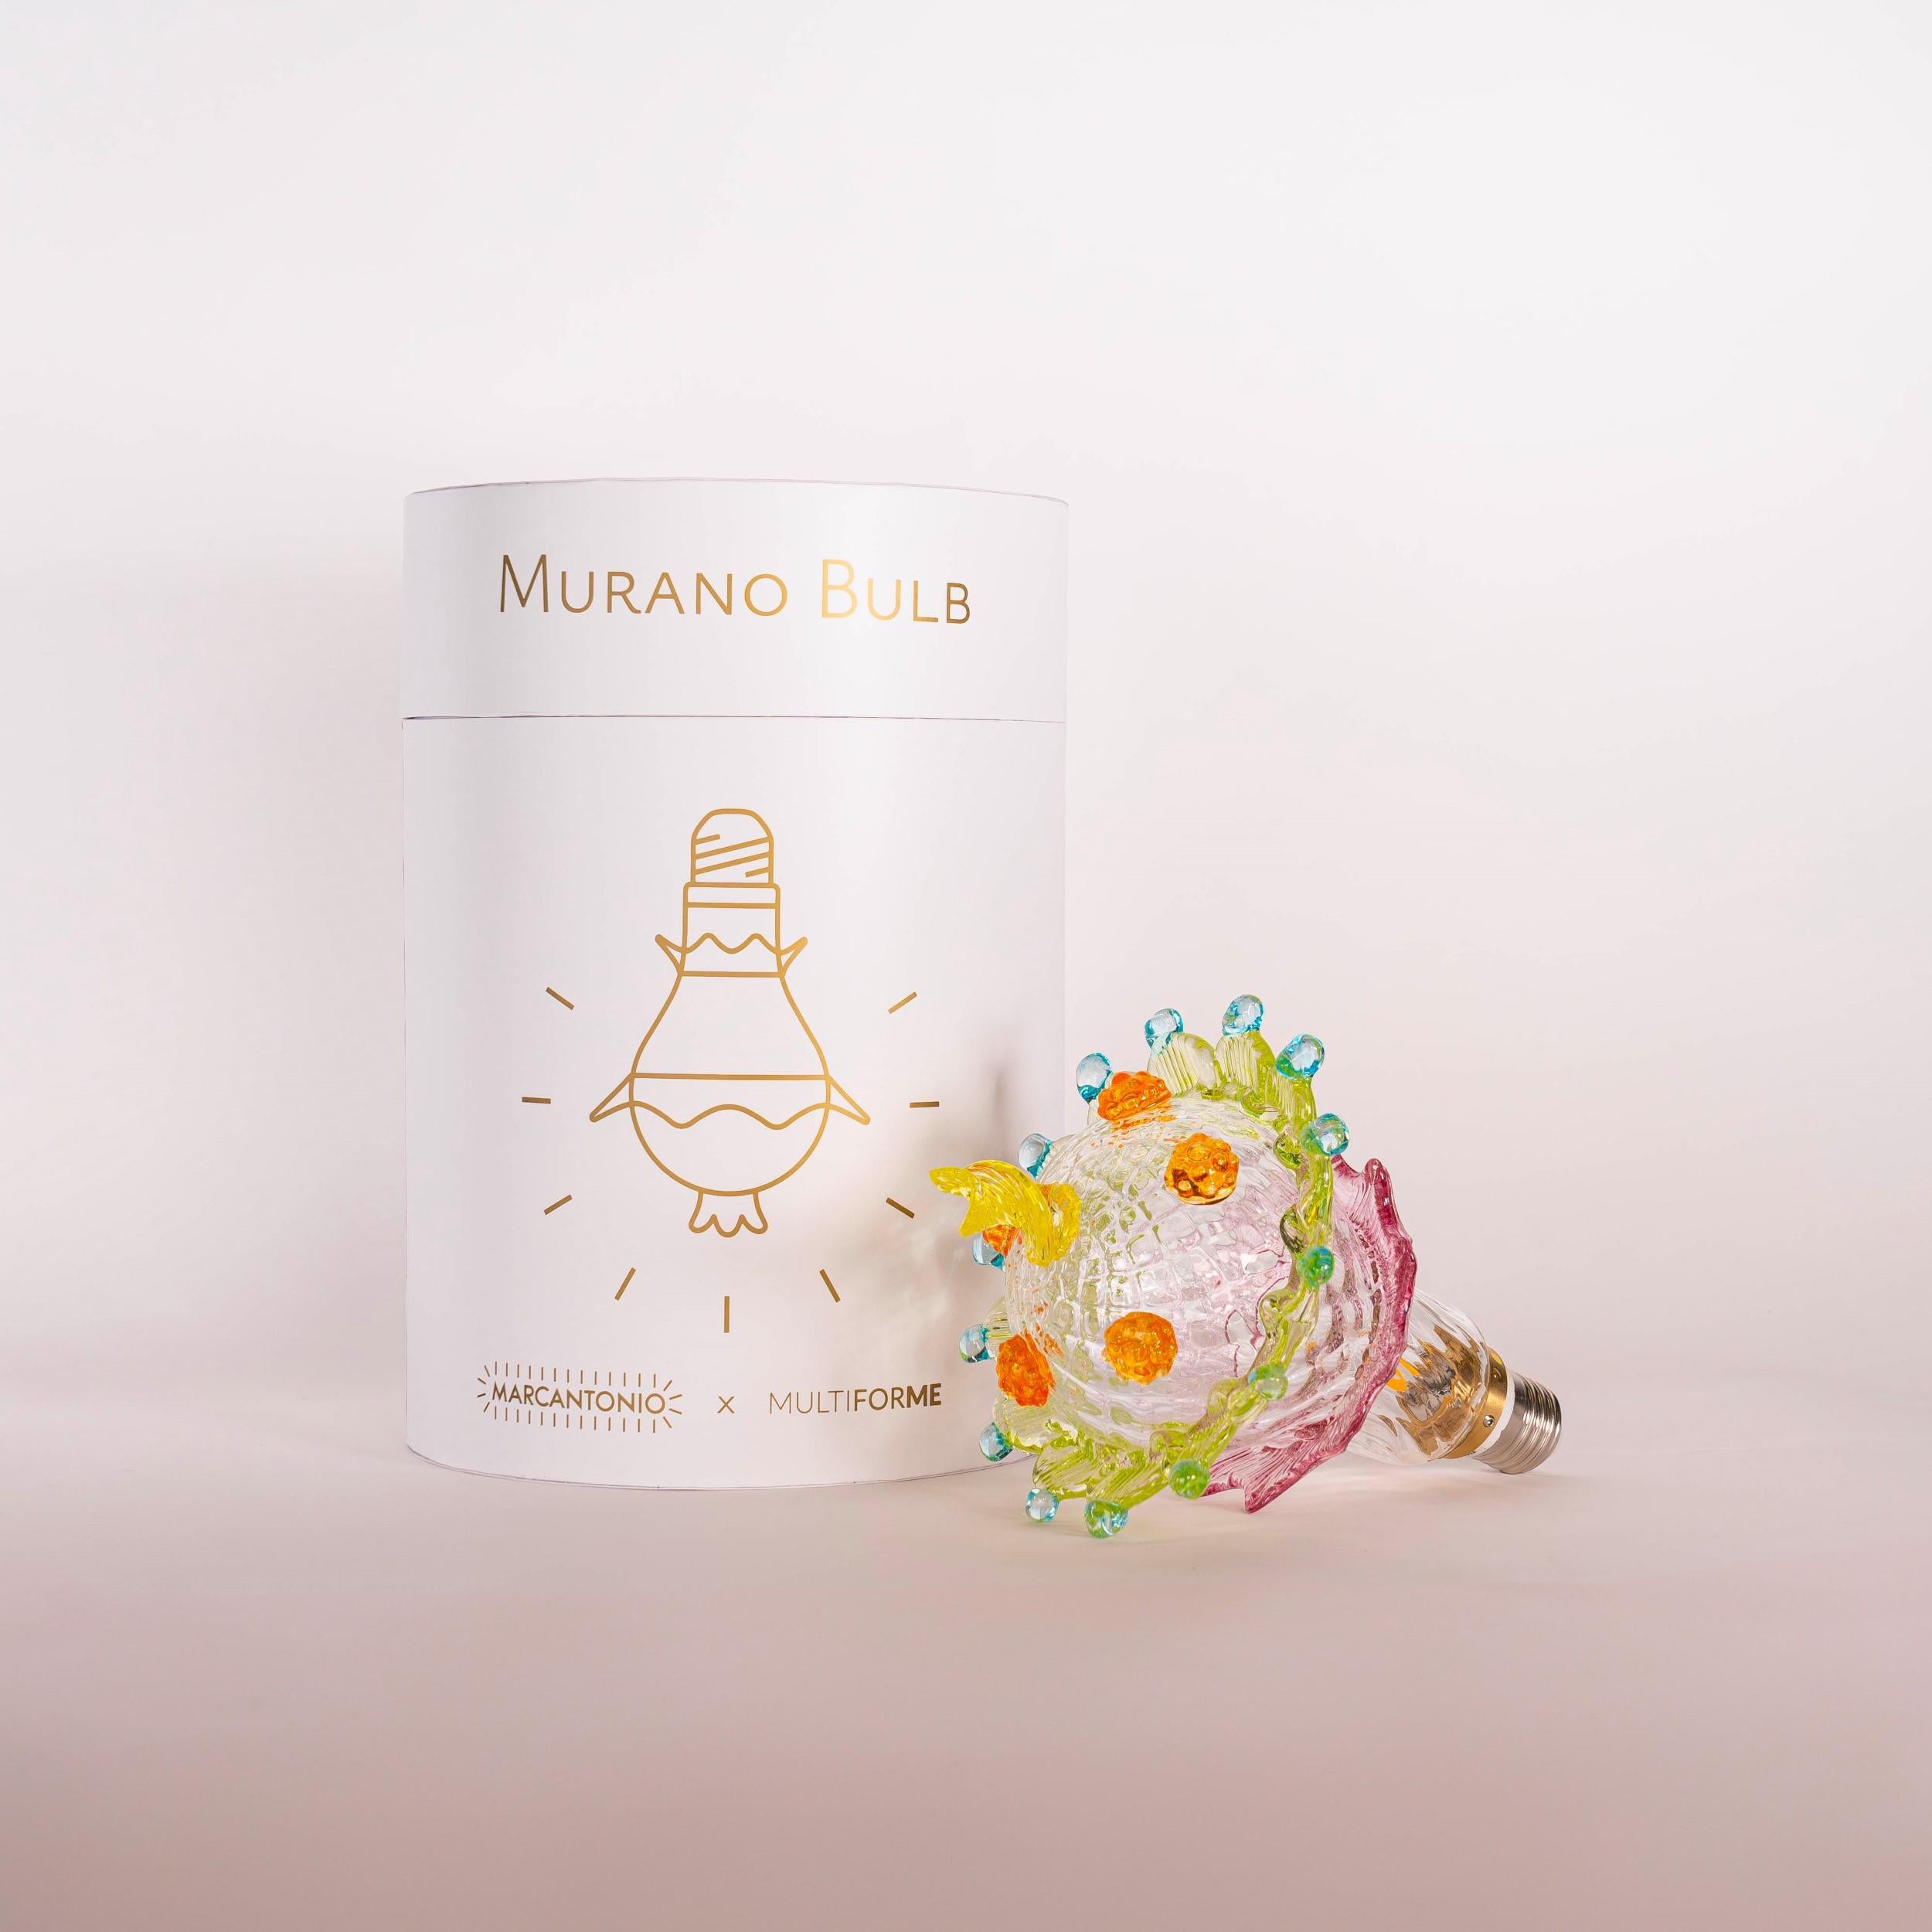 L'art du verre de Murano rencontre l'iconicité d'une ampoule, ensemble ils donnent naissance à un meuble brillant : une ampoule, un lustre ou tout ce que votre imagination vous suggère.

Murano Bulb, votre moment d'illumination.

Le projet Murano